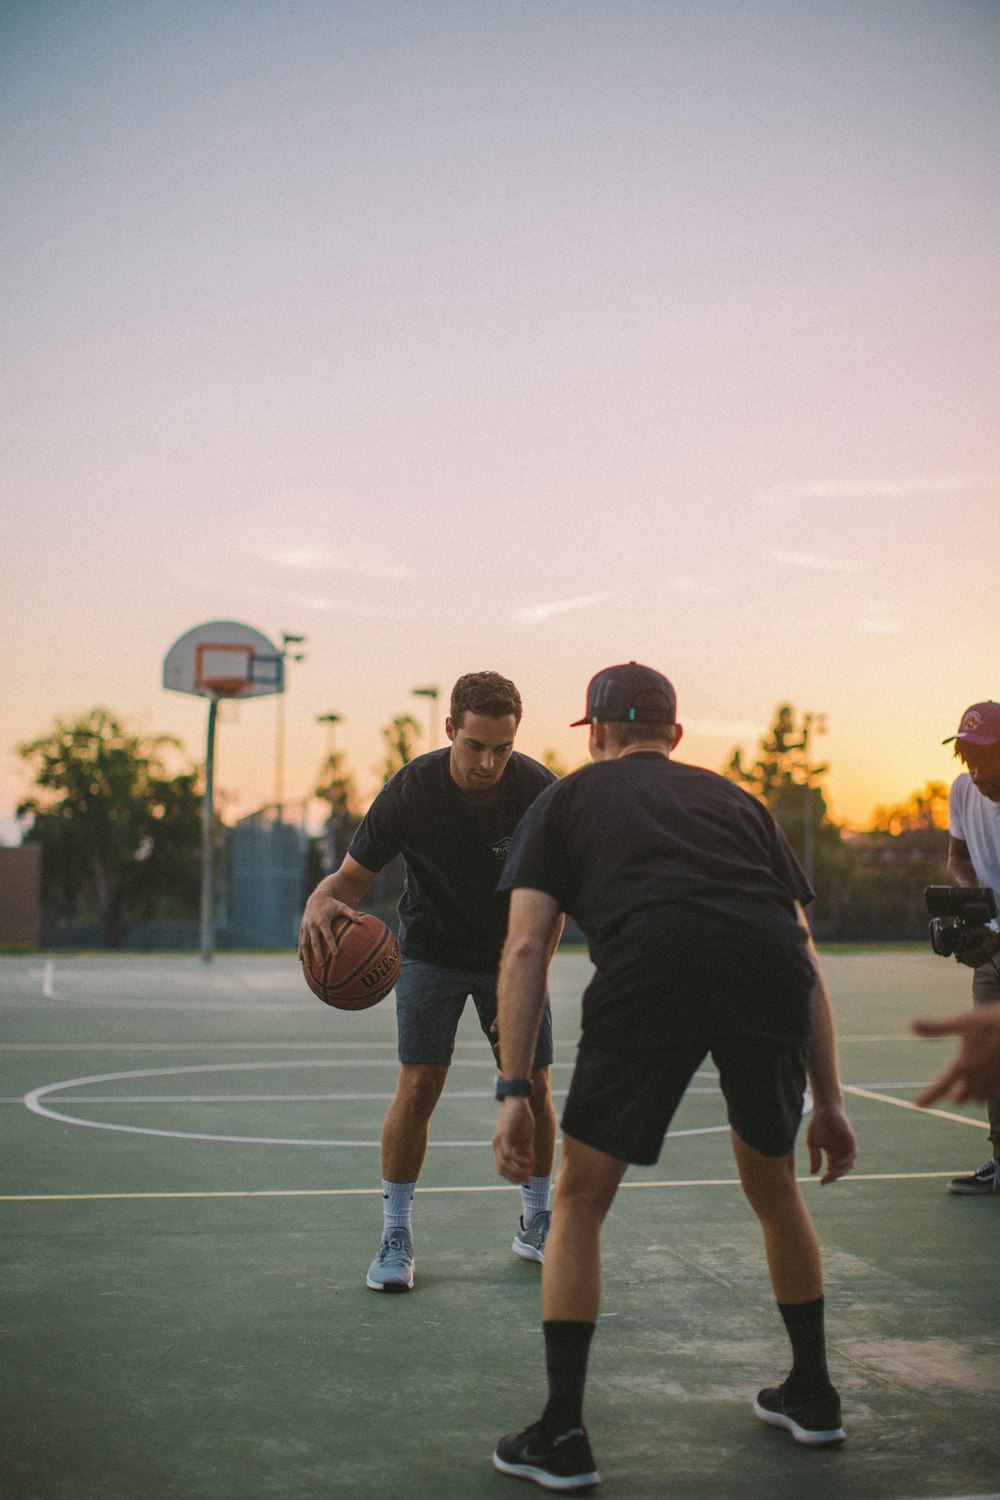 dois caras jogando basquete durante o dia